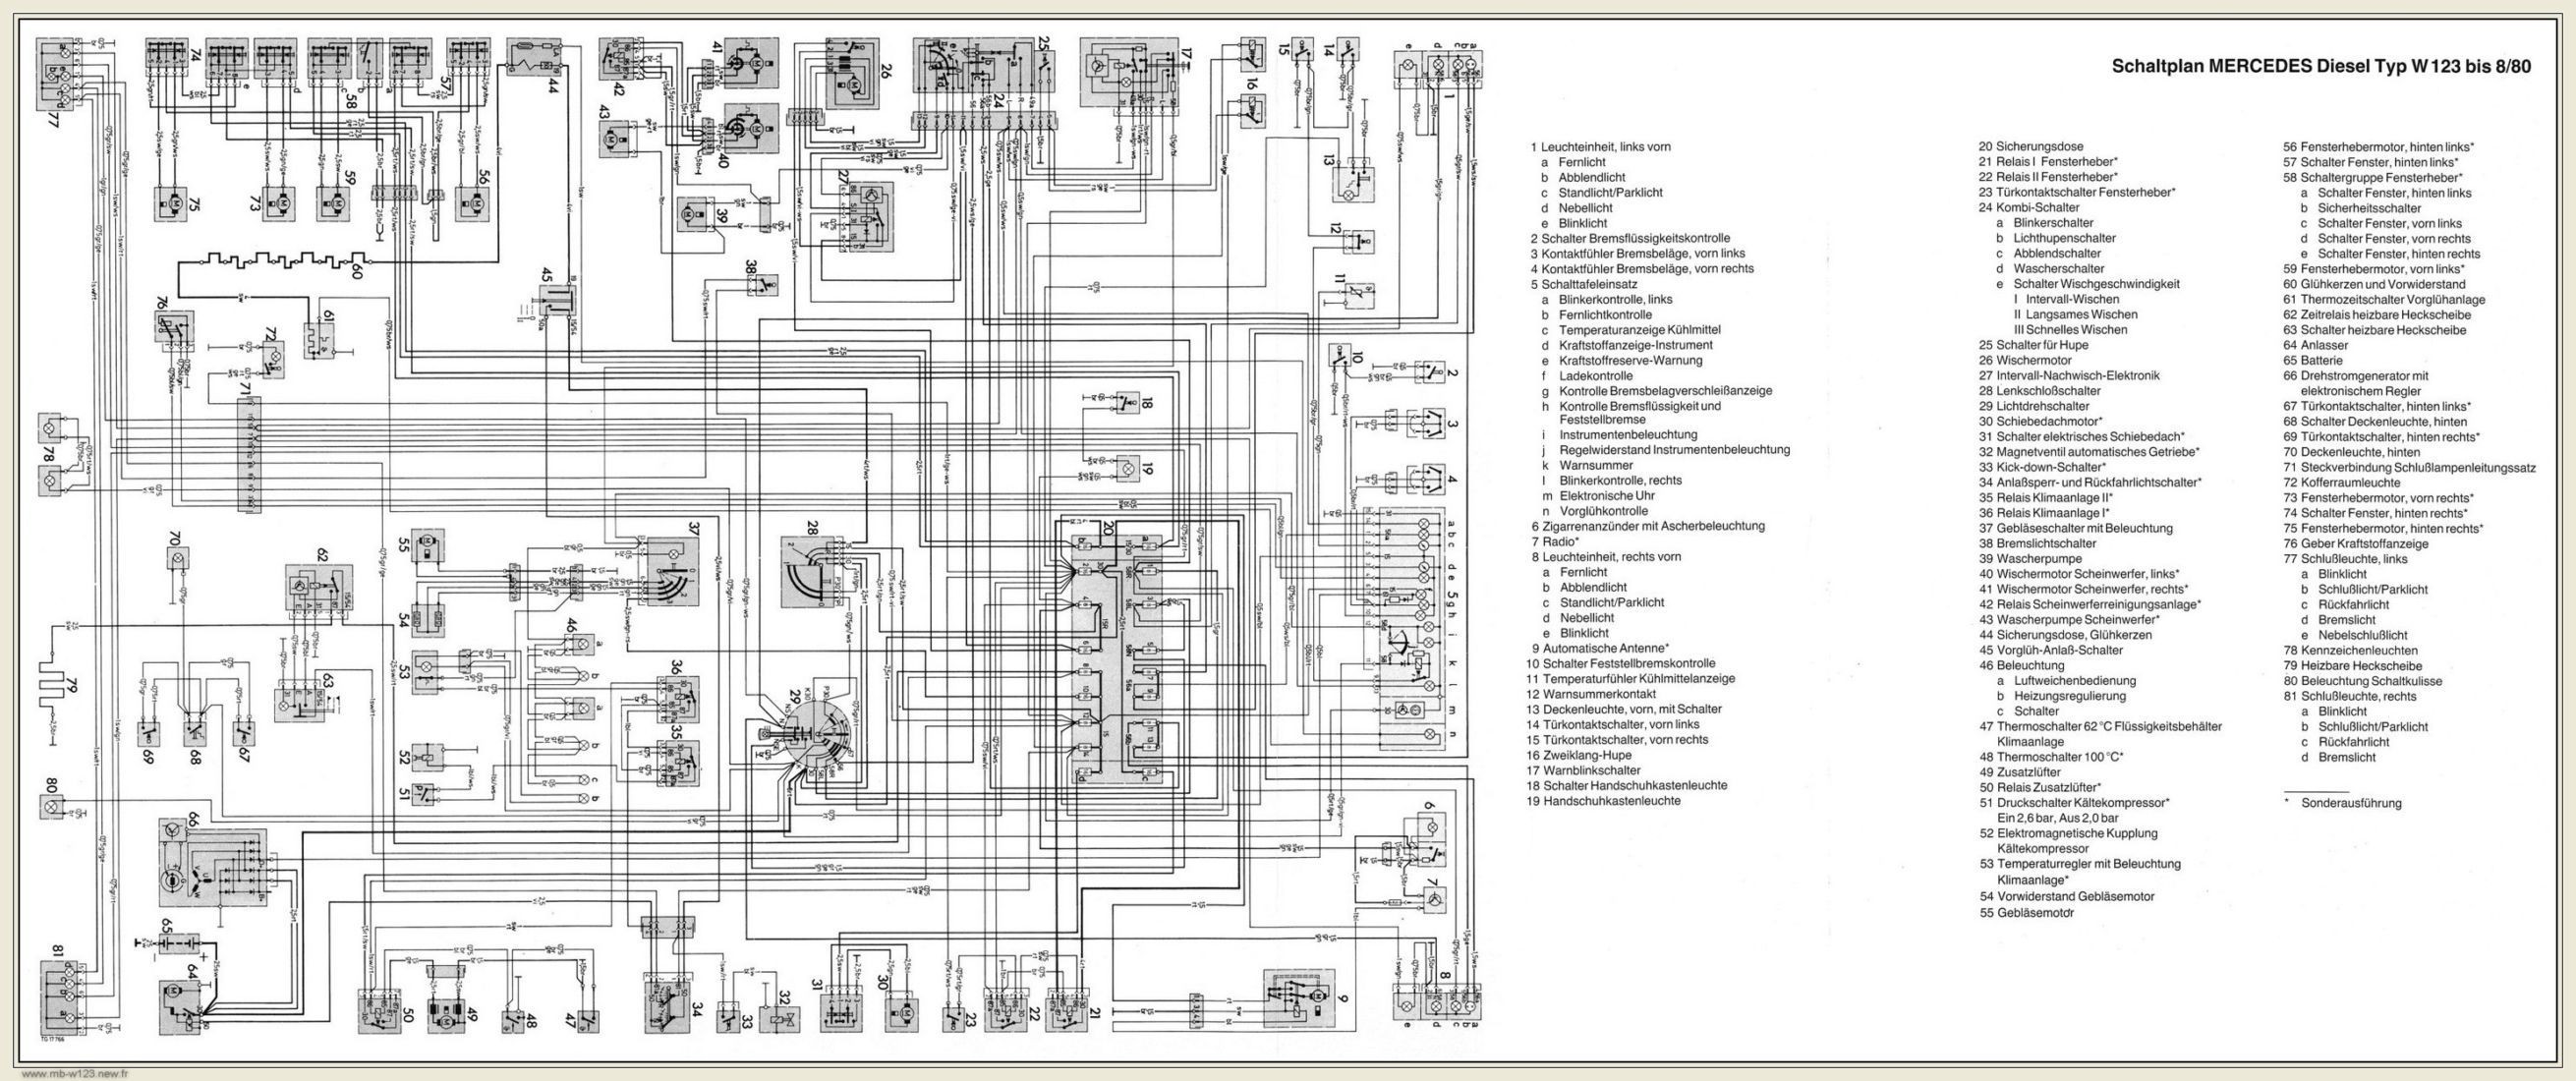 Mercedes Engine Diagram Schaltplan Mercedes W115 2 Mercedes Benz Pinterest Of Mercedes Engine Diagram